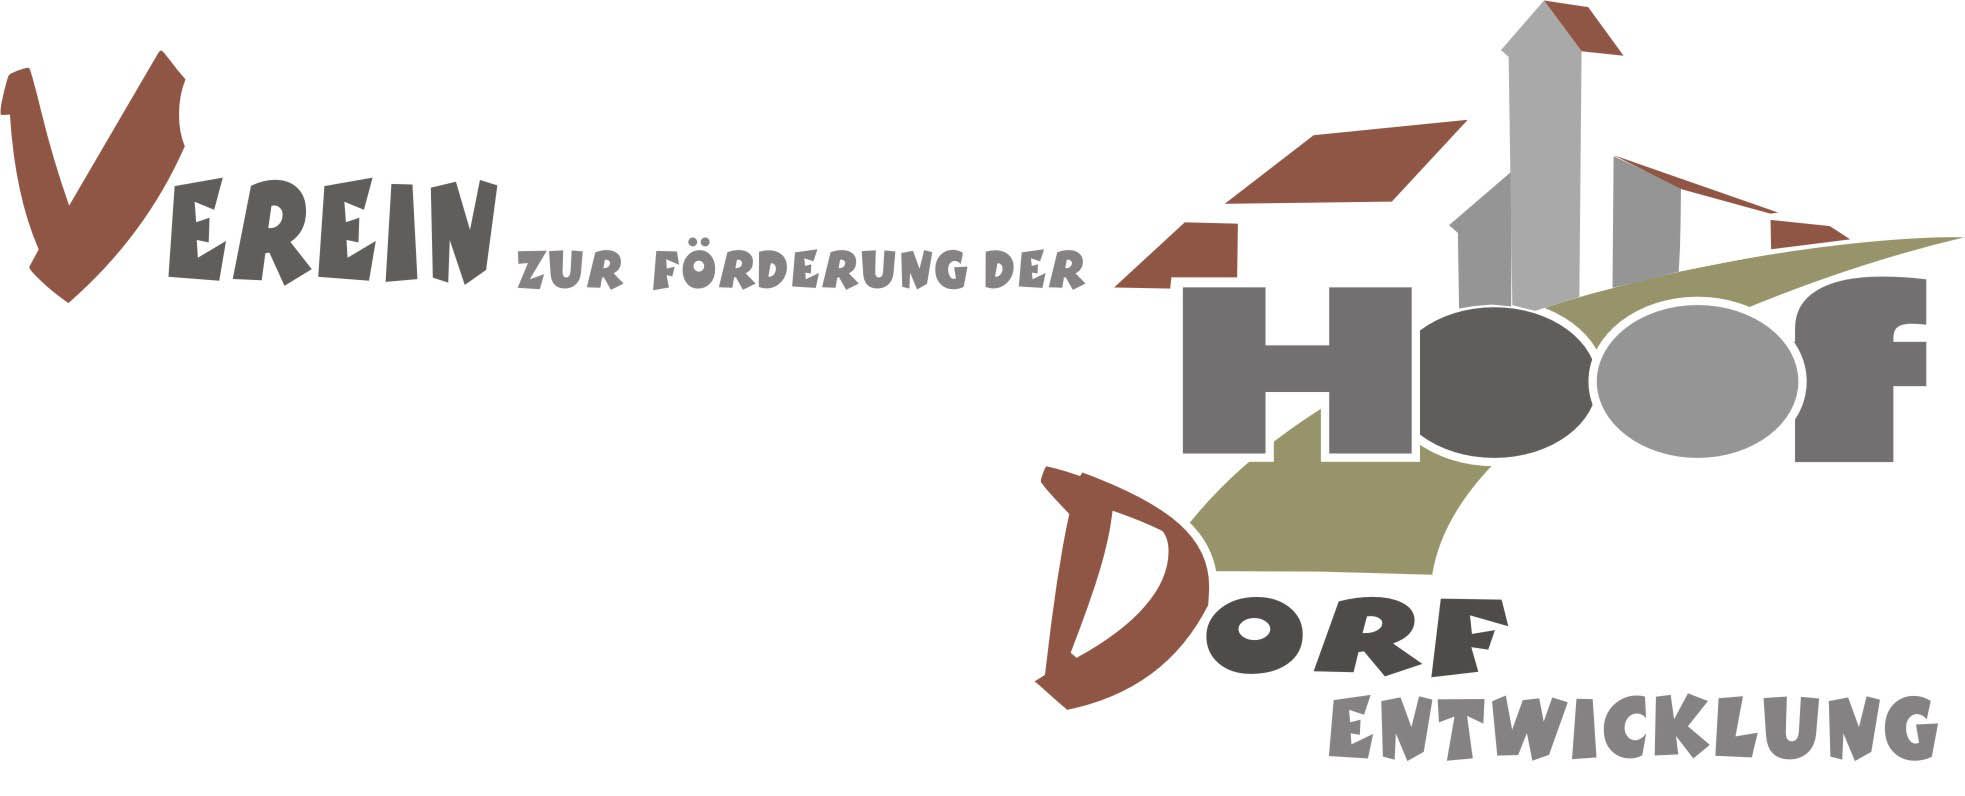 Profilbild des Vereins 'Verein zur Förderung der Dorfentwicklung Hoof e.V.'